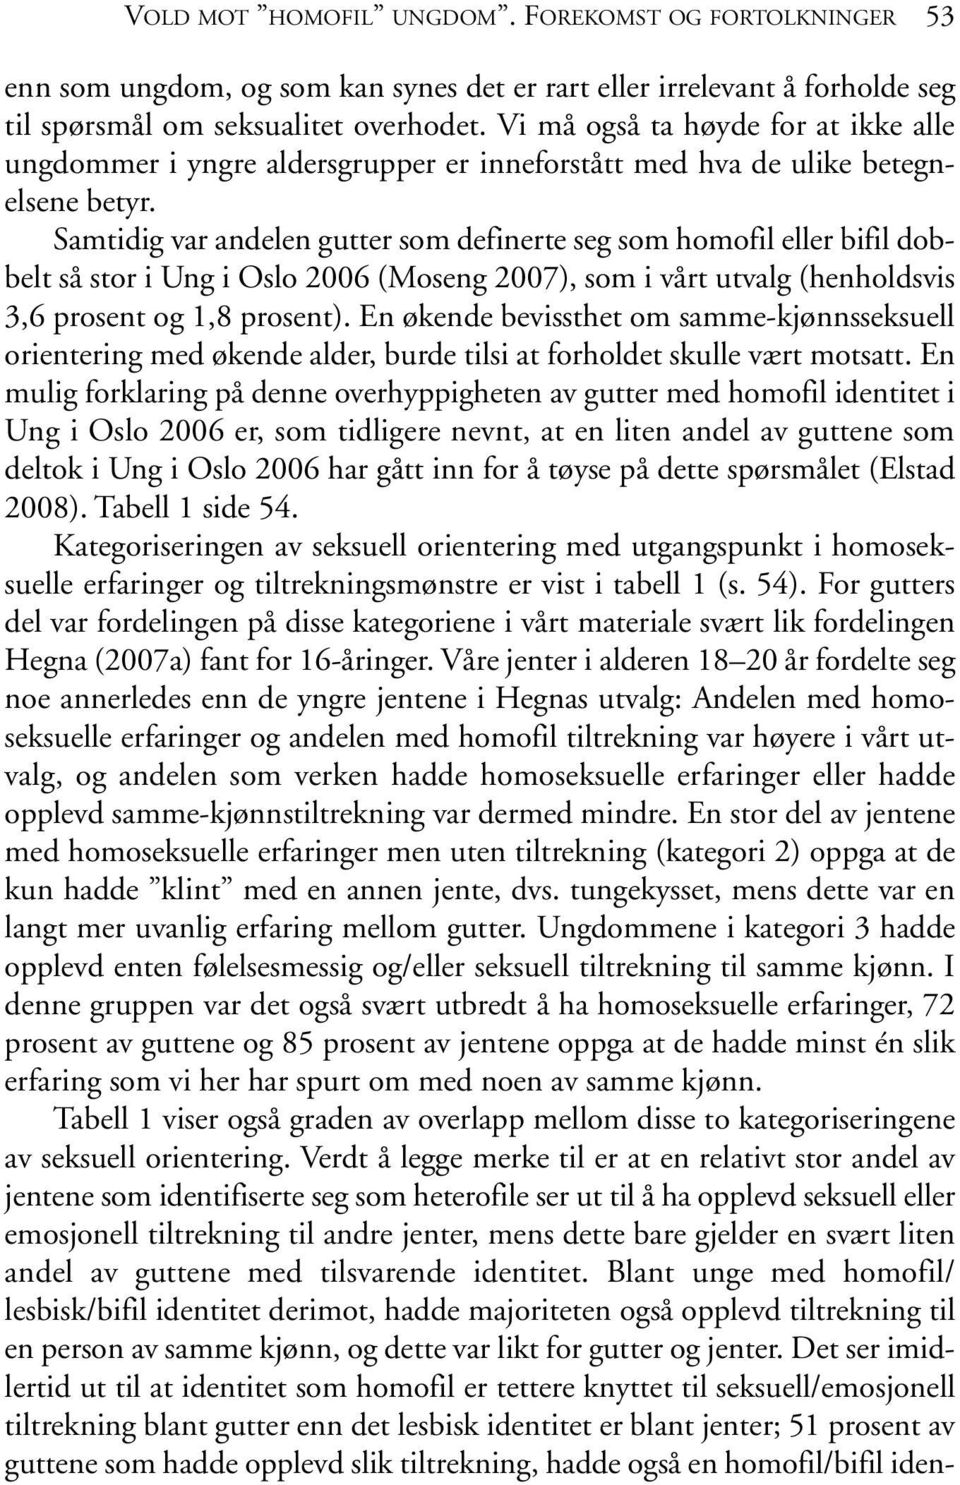 Samtidig var andelen gutter som definerte seg som homofil eller bifil dobbelt så stor i Ung i Oslo 2006 (Moseng 2007), som i vårt utvalg (henholdsvis 3,6 prosent og 1,8 prosent).